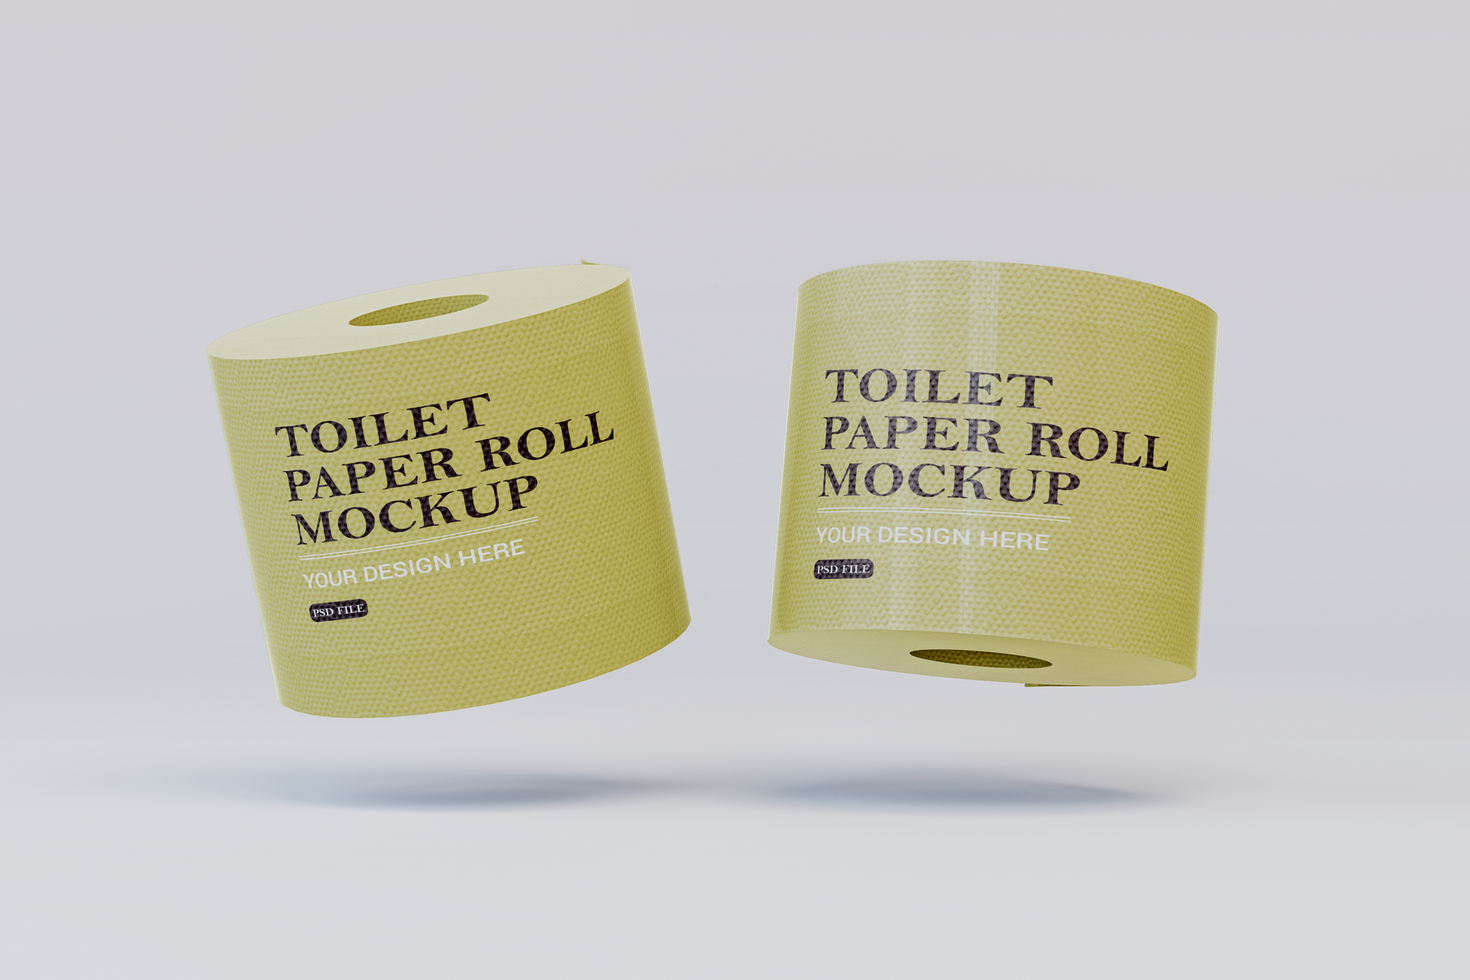 schwebend Toilette Papier rollen Attrappe, Lehrmodell, Simulation Vorlage psd